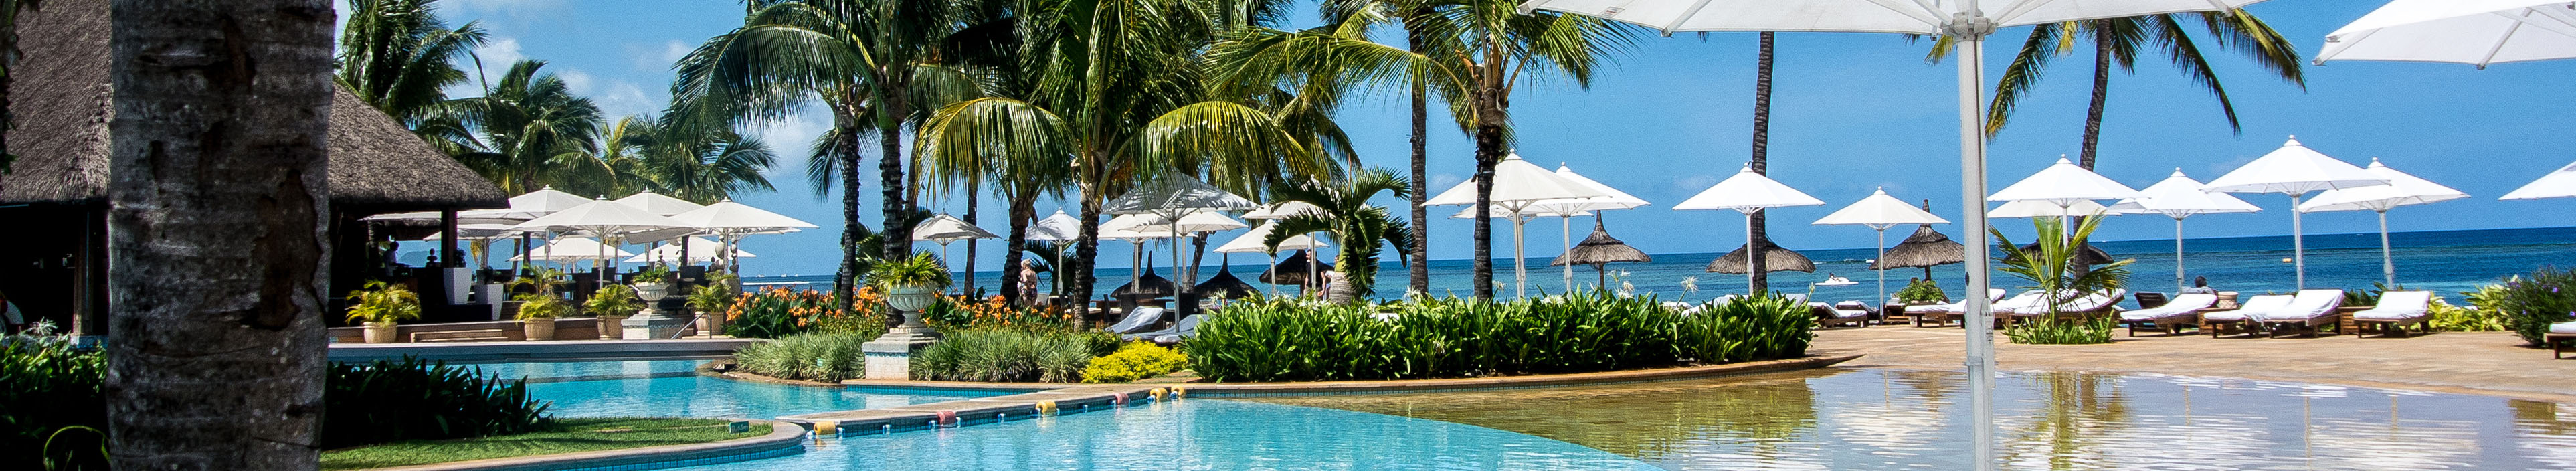 Hotel auf Mauritius, Pool, Palmen, Liegen und Sonnenschirme, im Hintergrund das Meer. 